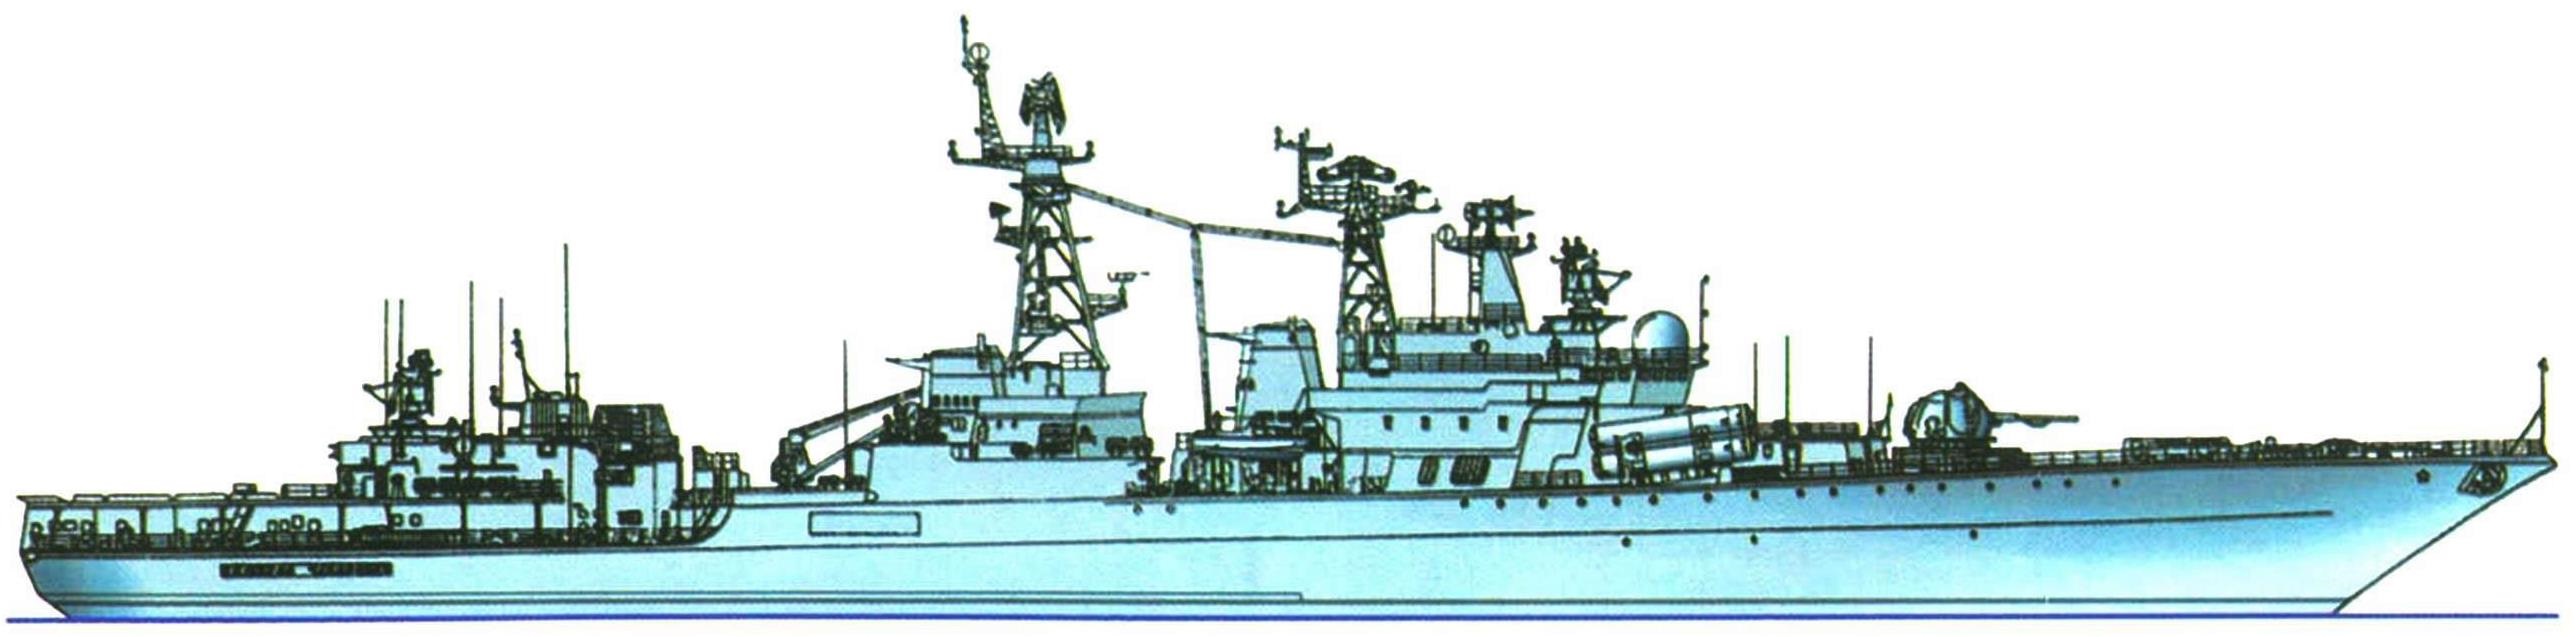 Большой противолодочный корабль "Адмирал Чабаненко" (проект 11551), Россия, 1998 г.